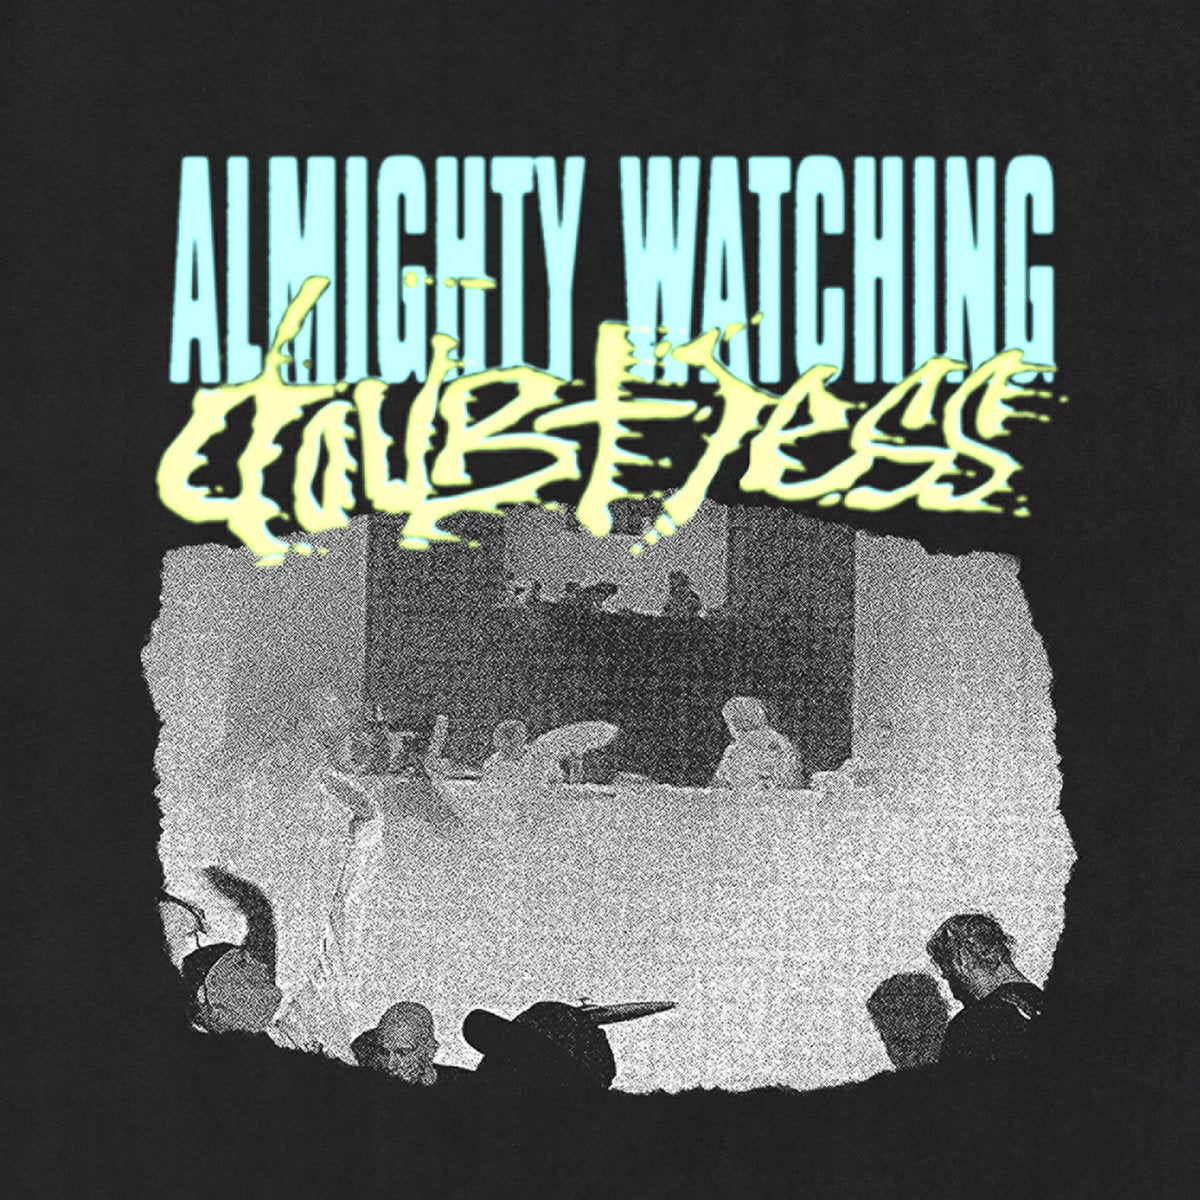 Almighty Watching "Doubtless" 7" Vinyl